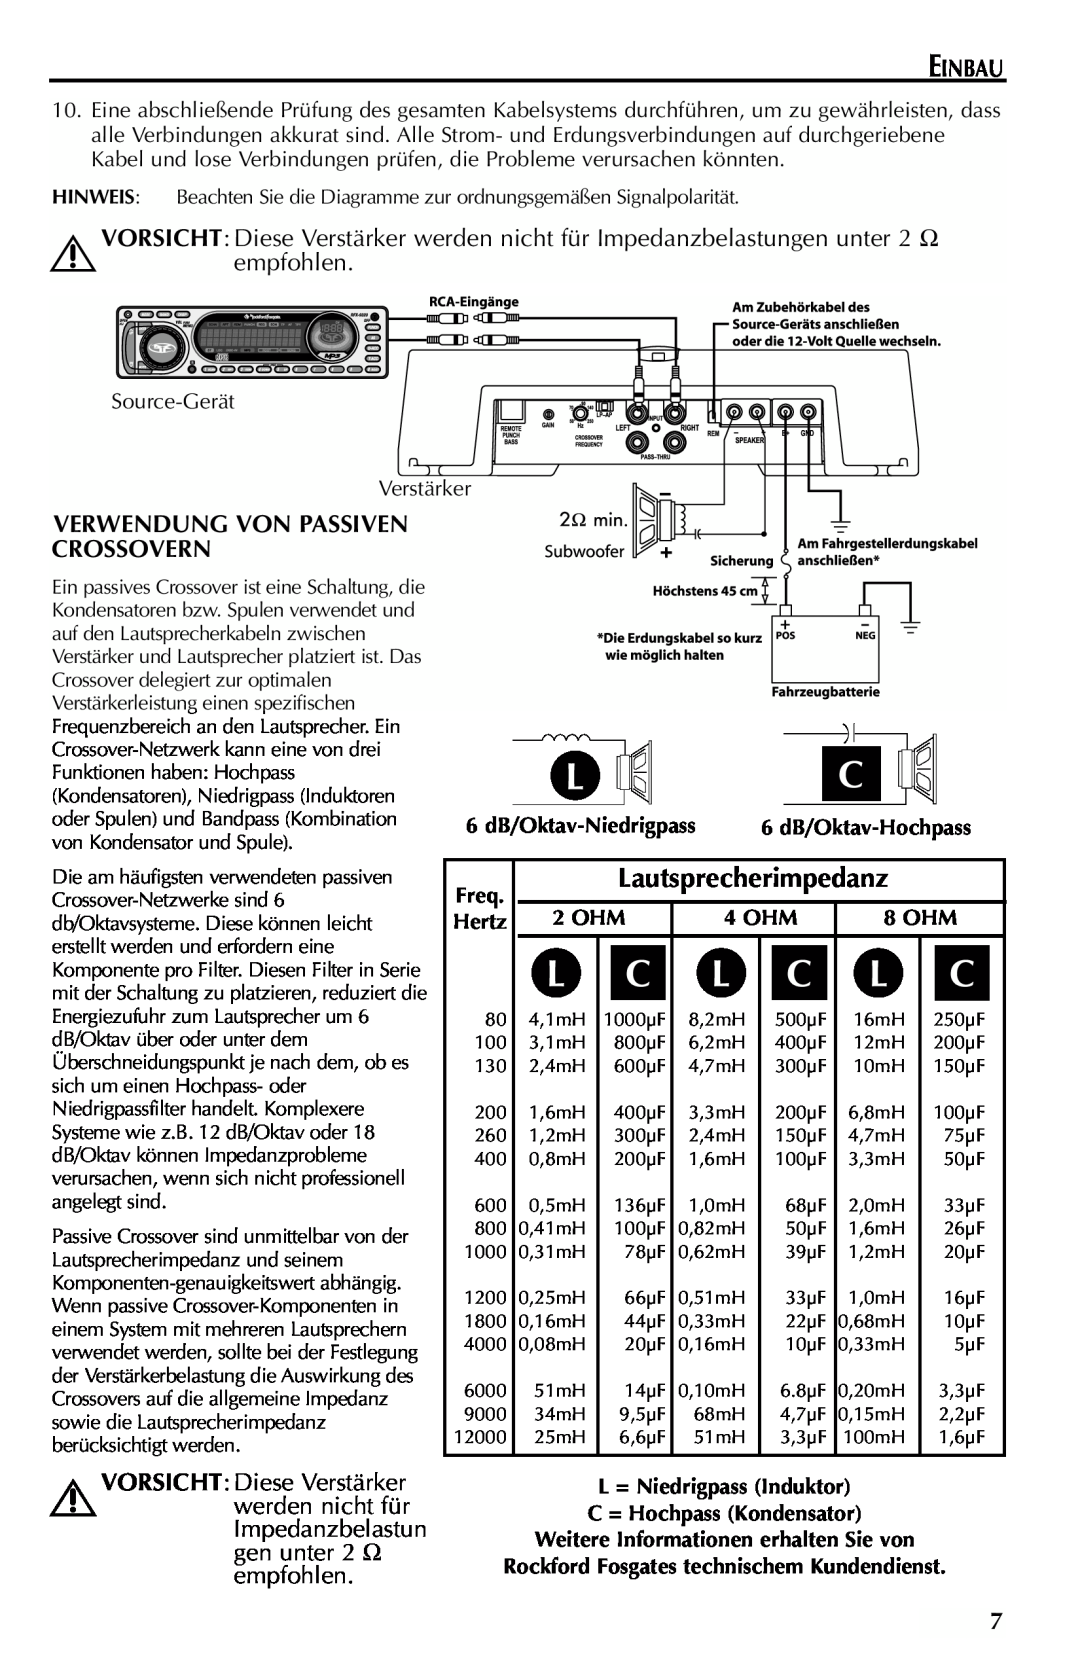 Rockford Fosgate 351M manual Einbau, empfohlen, Verwendung Von Passiven Crossovern, Lautsprecherimpedanz 